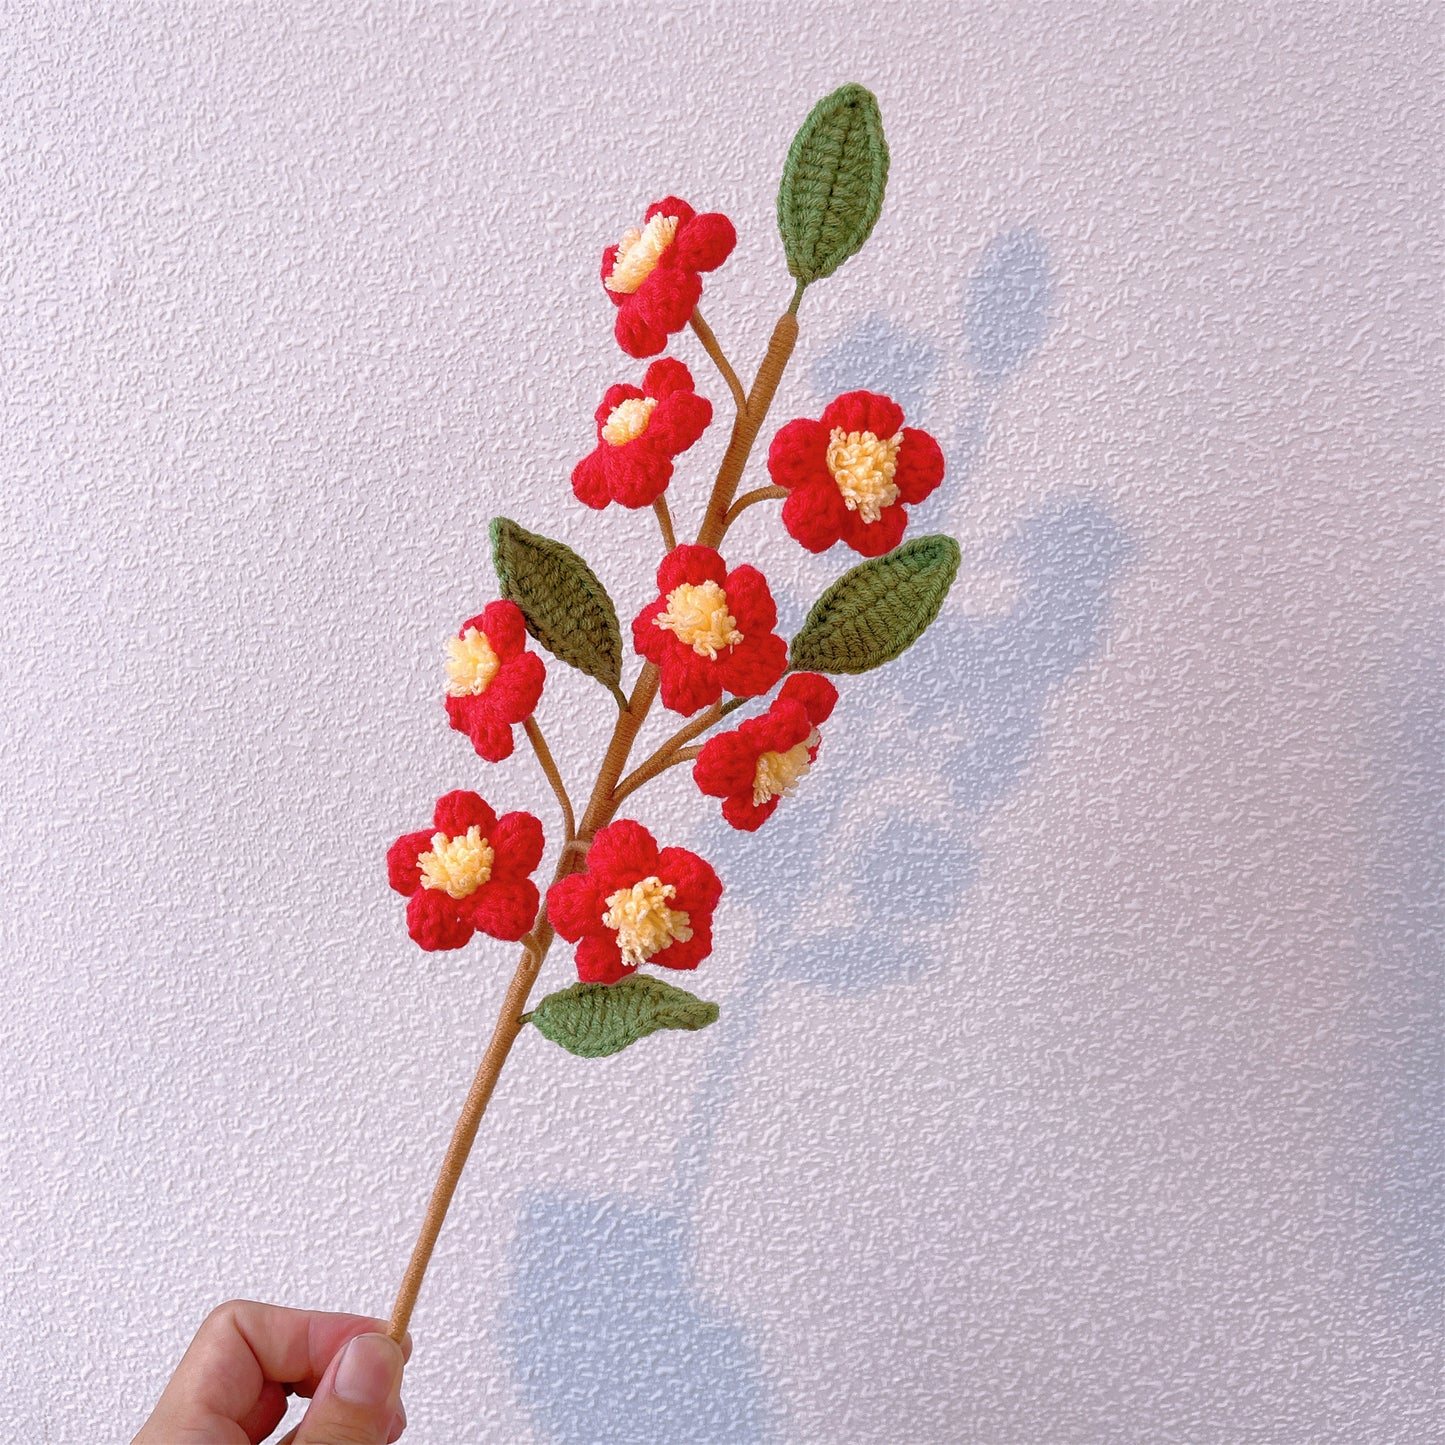 Pfirsich-Perfektion: Handgefertigter gehäkelter Pfirsichblütenstecker für eine wunderschöne Gartendekoration und ein bedeutungsvolles Geschenk